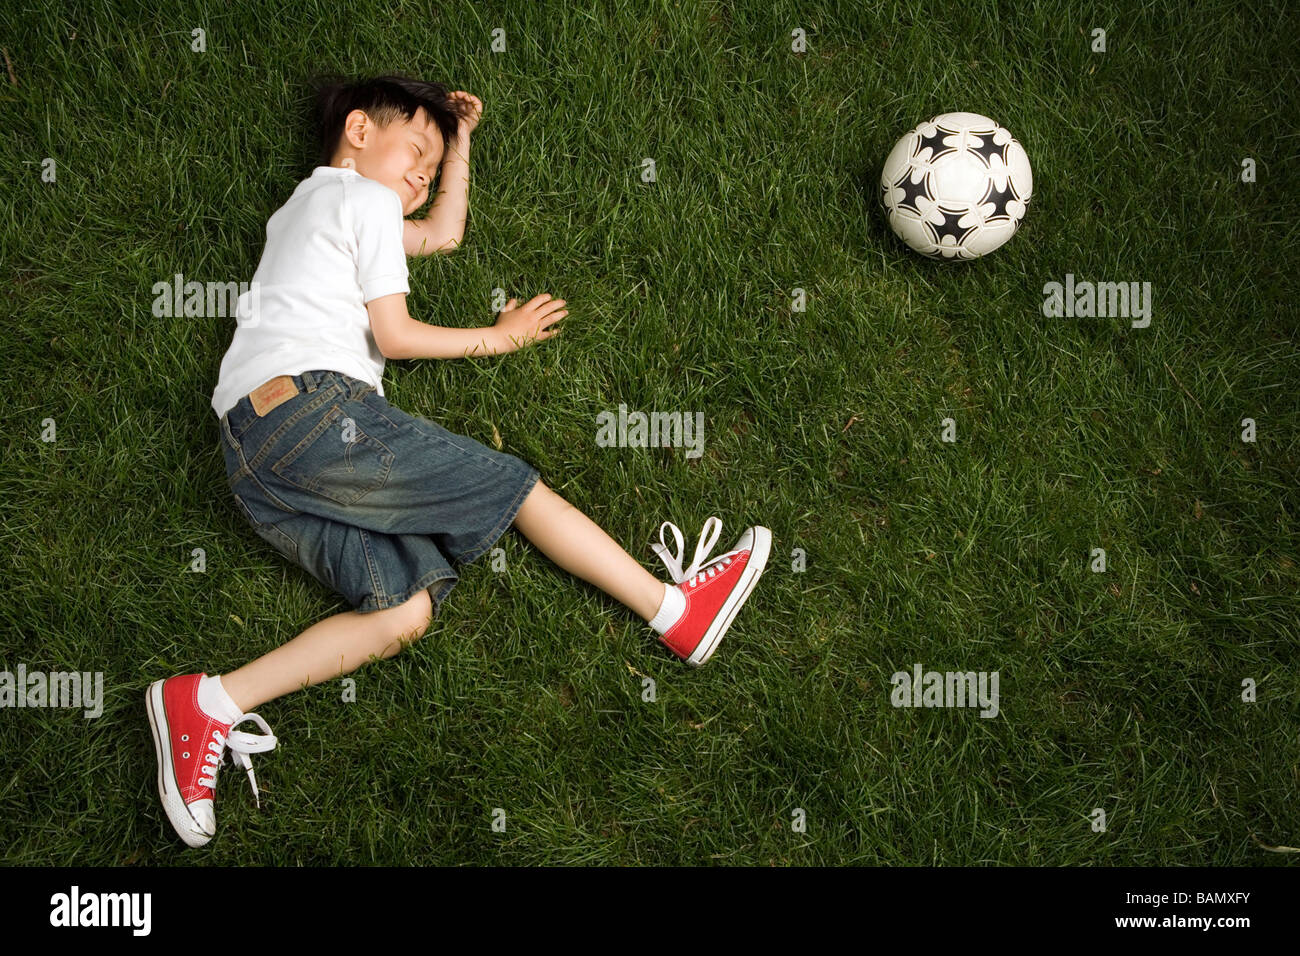 Garçon jouant mort près d'un ballon de football sur l'herbe Banque D'Images